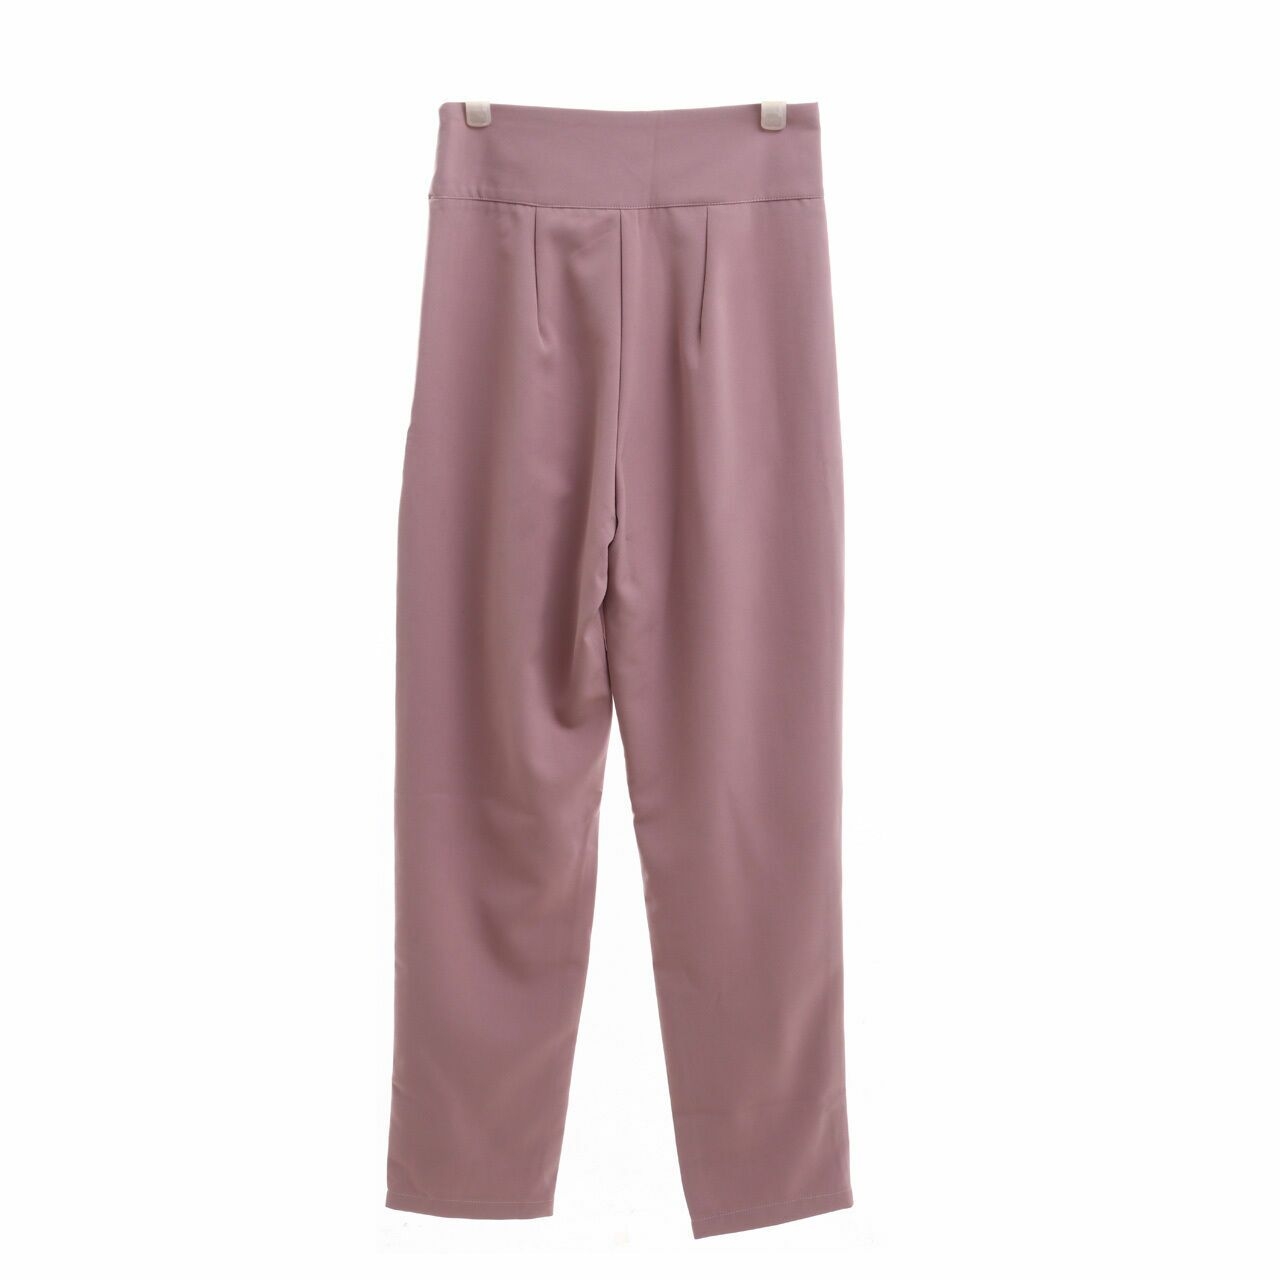 Malika By Modelano Dusty Pink Long Pants